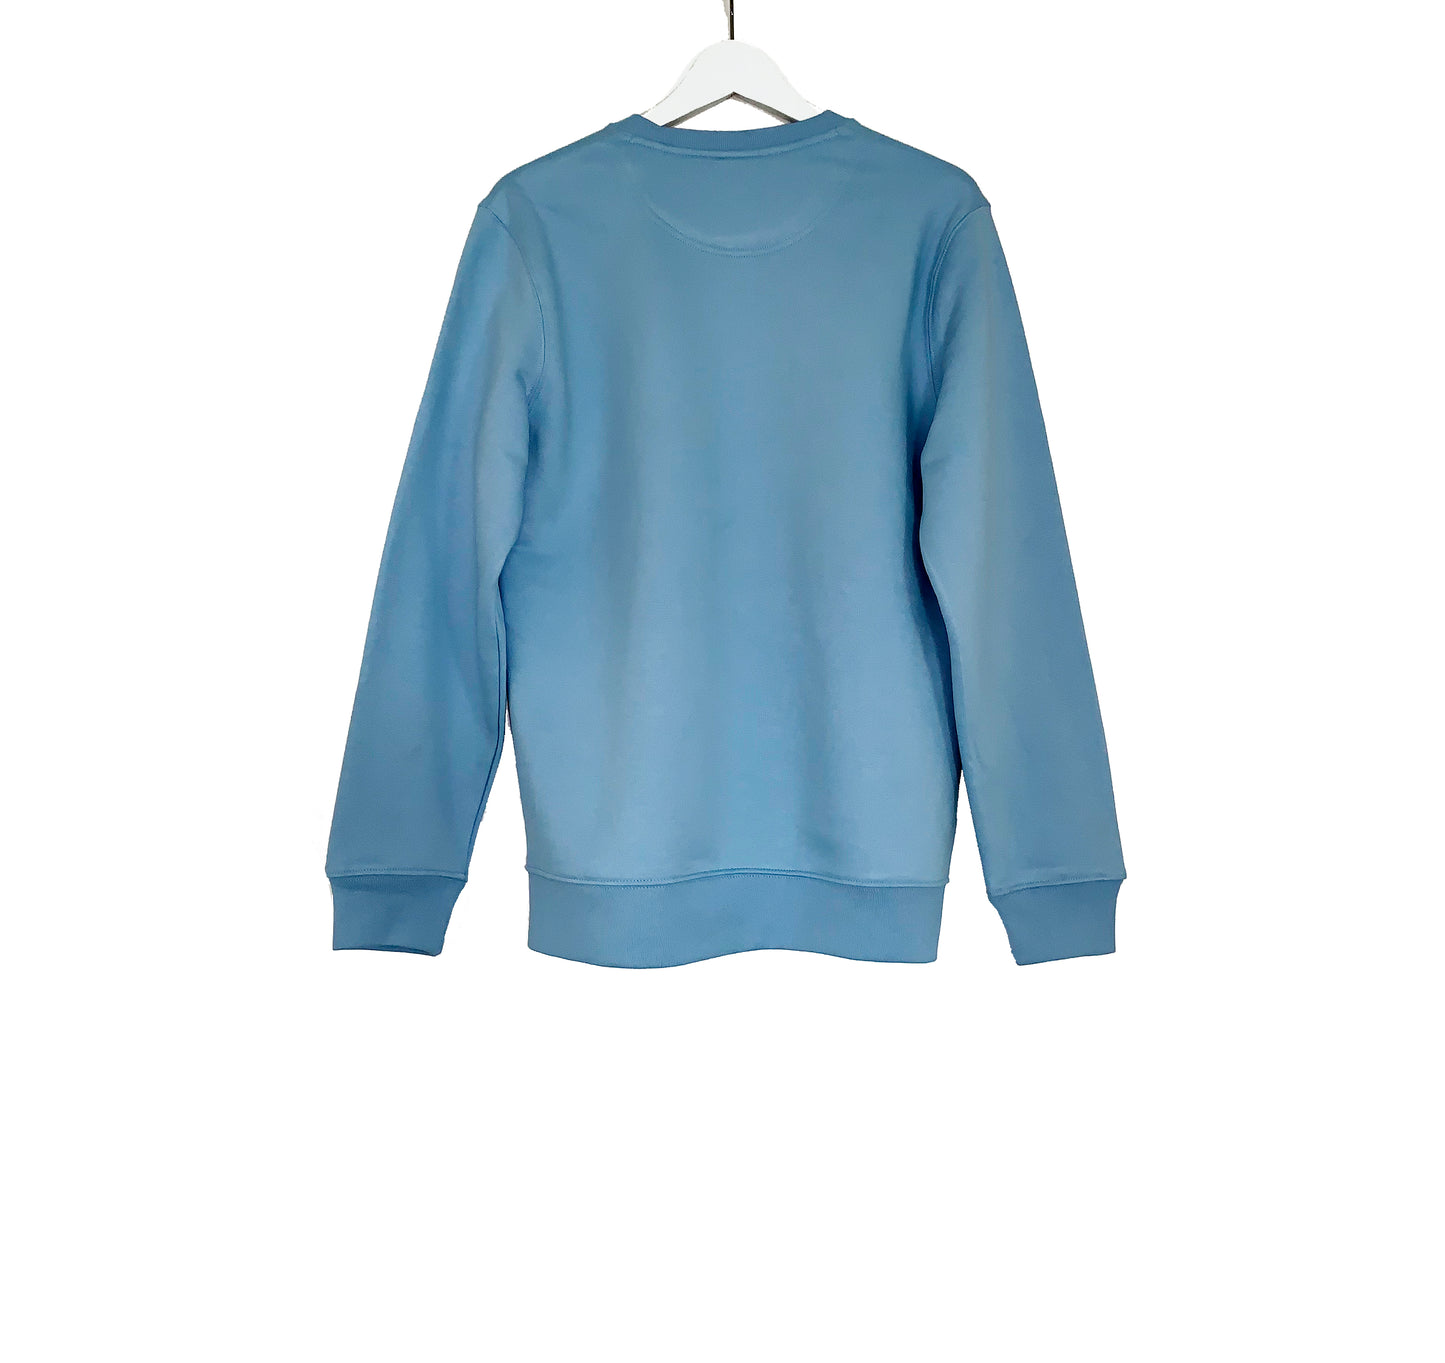 DTRH Crewneck Sweater Sky Blue